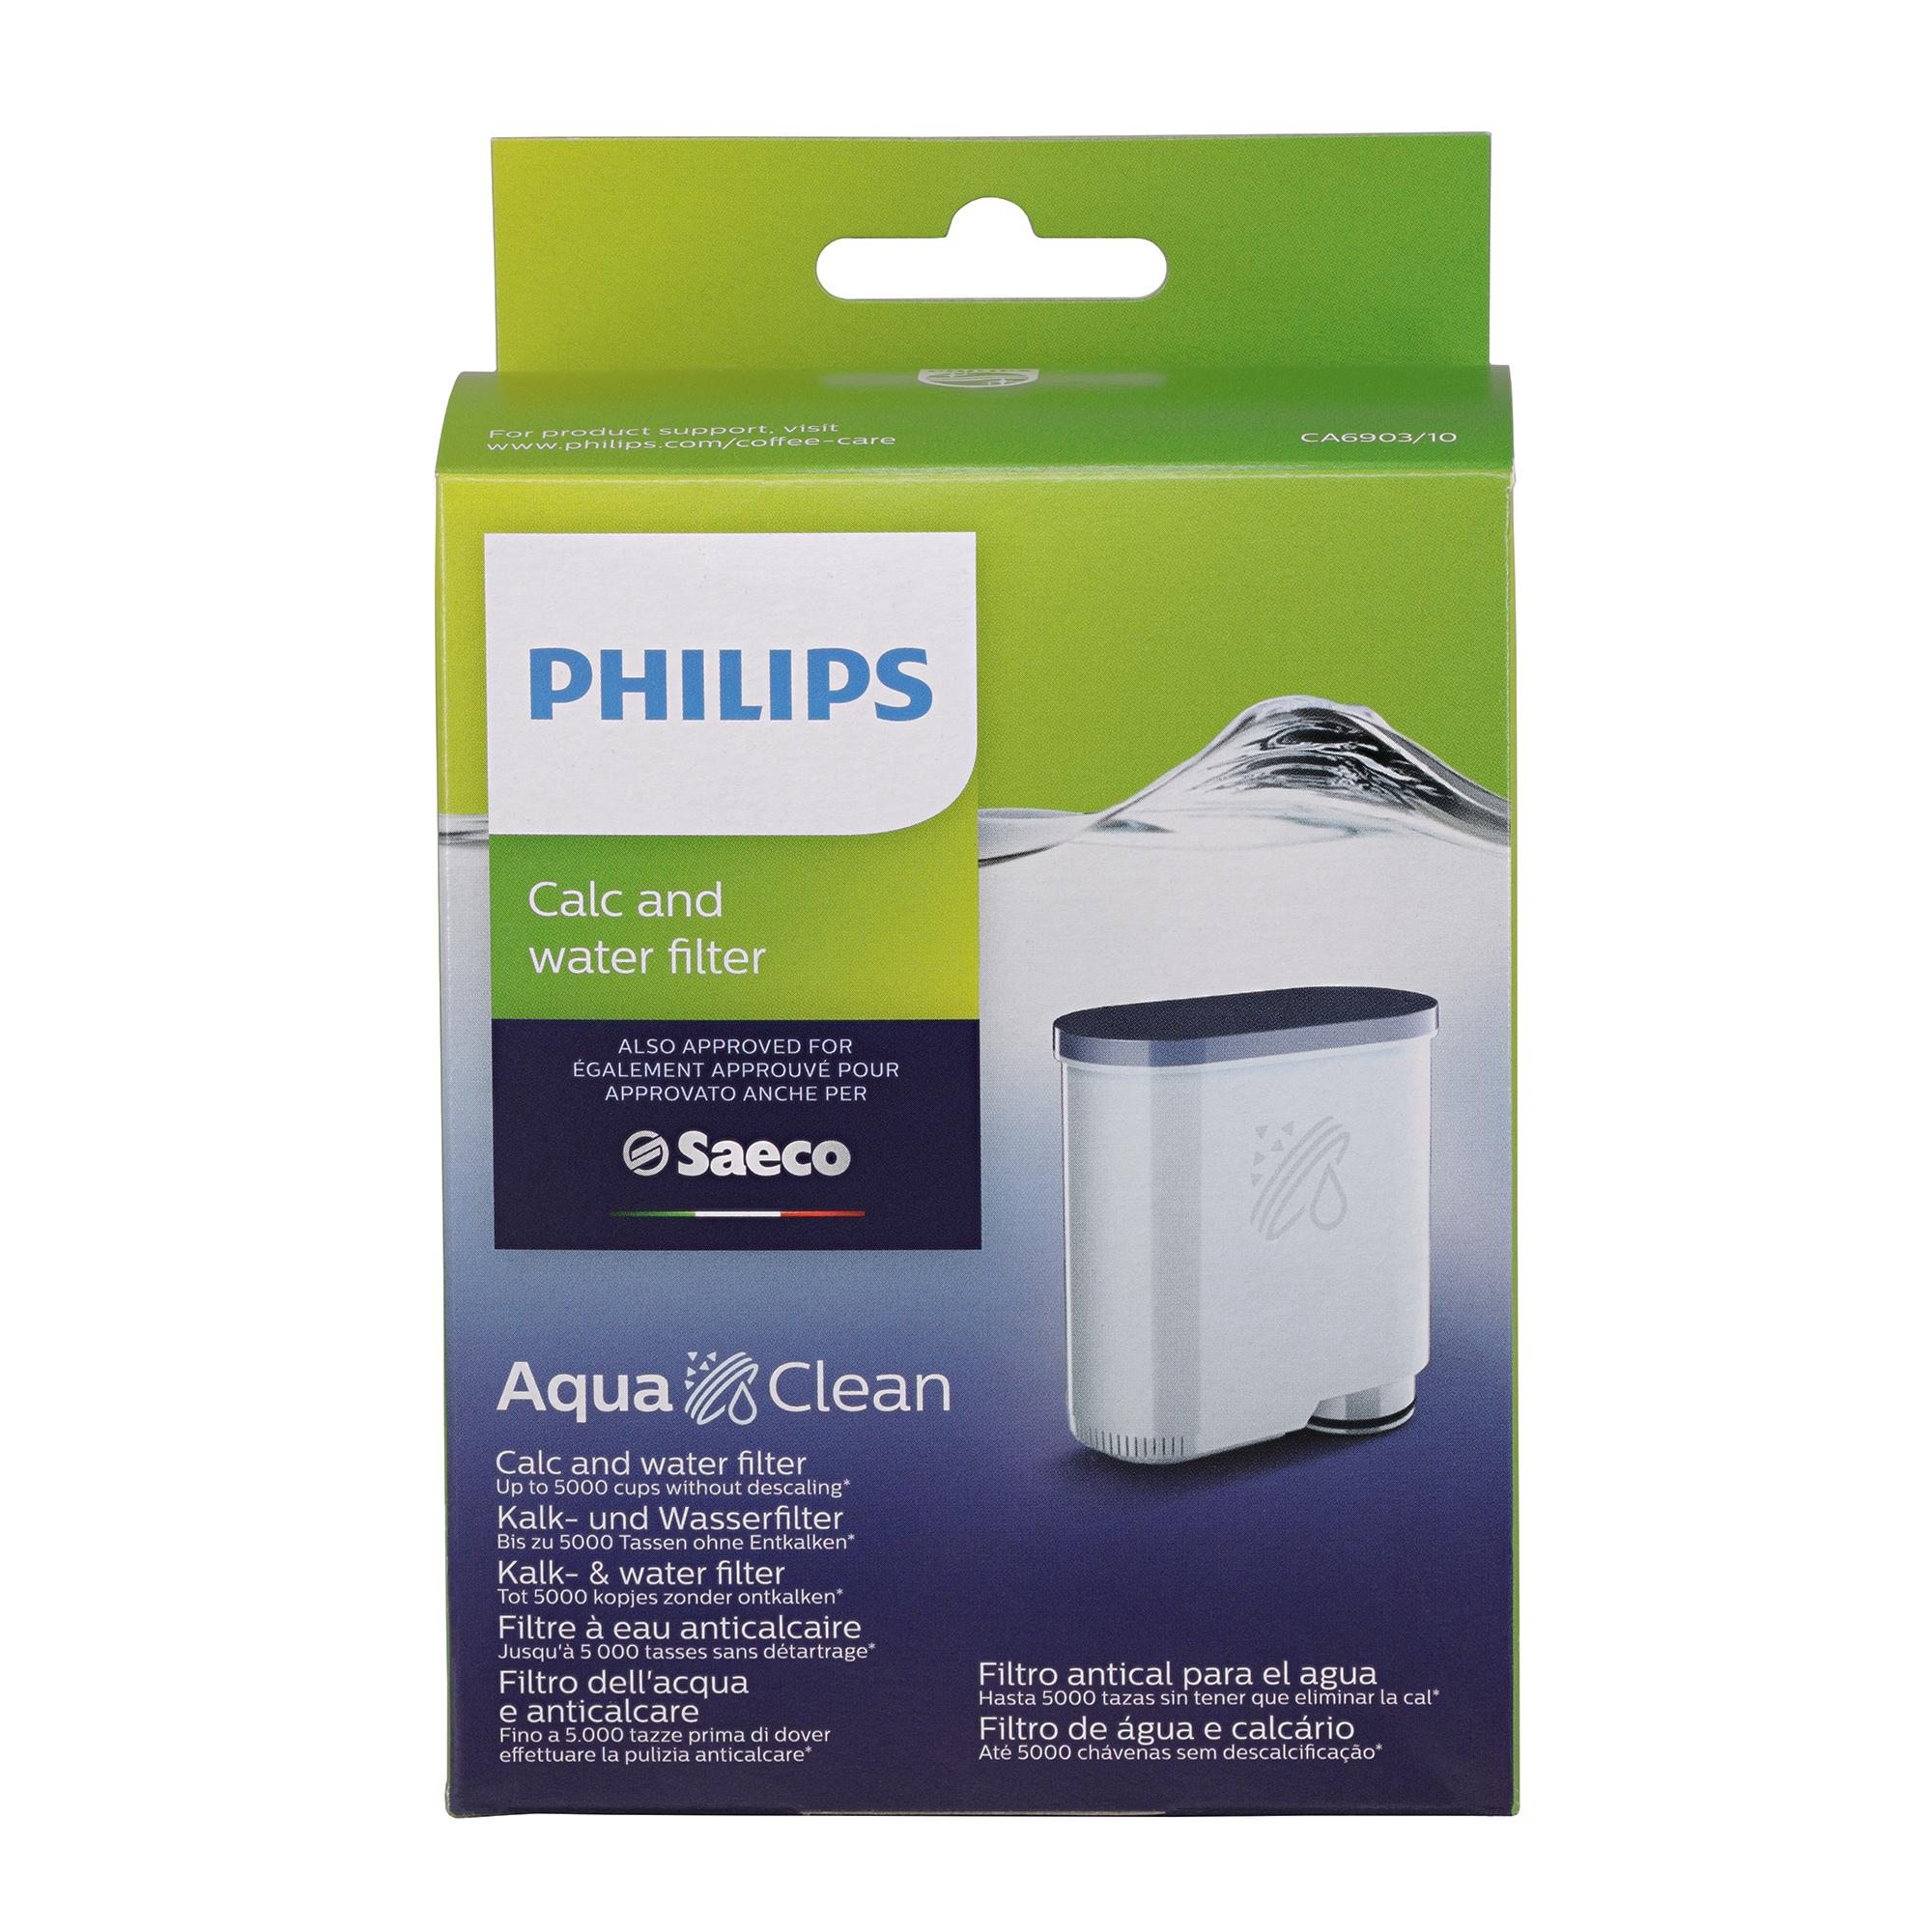  Philips AquaClean Kalk- und Wasserfilter für